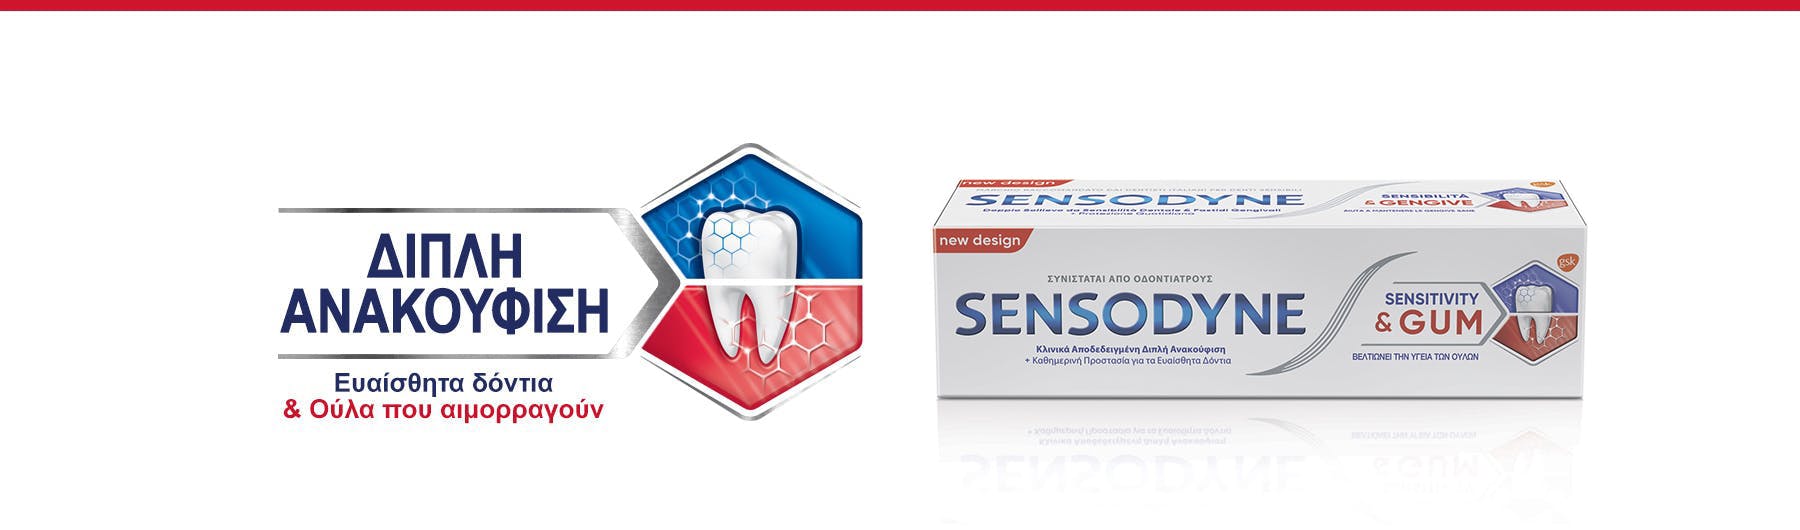 Συσκευασία οδοντόκρεμας Sensodyne Sensitivity & Gum για διπλή ανακούφιση και ευαίσθητα δόντια